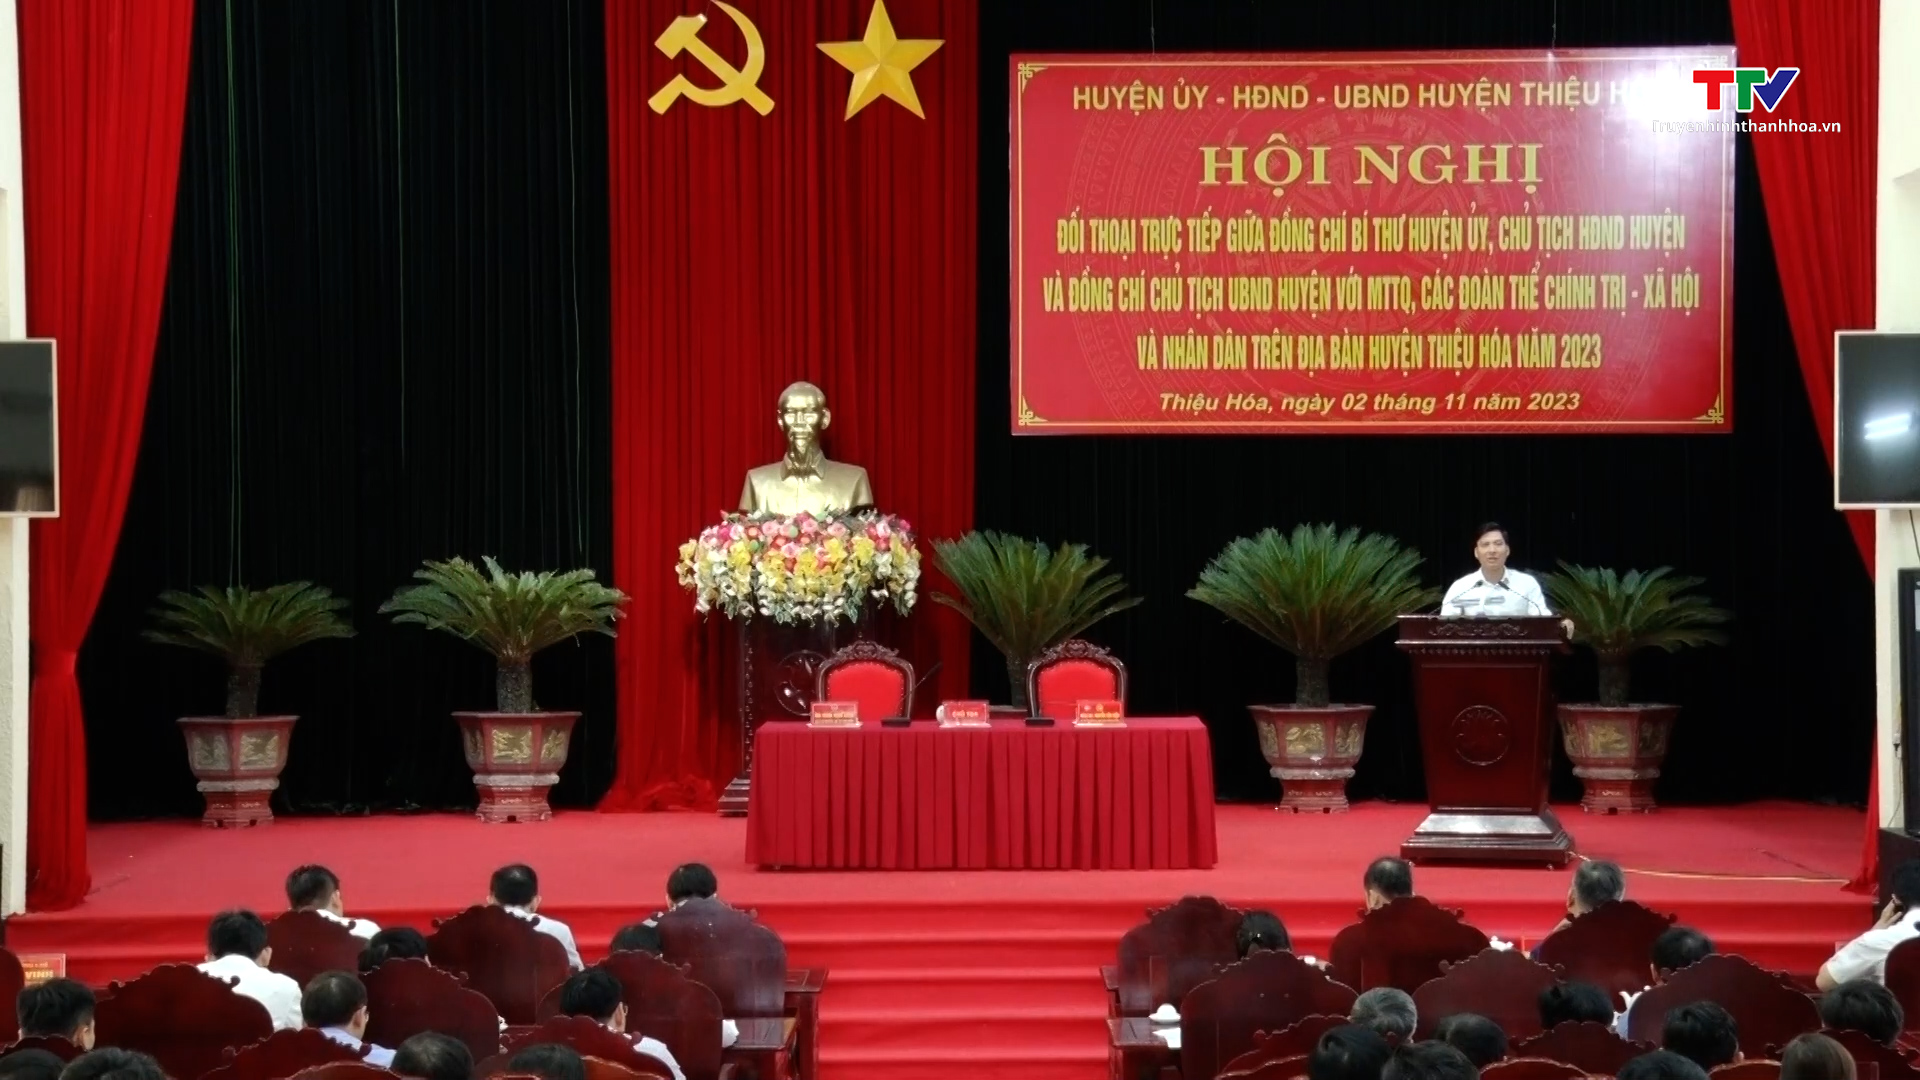 Lãnh đạo huyện Thiệu Hóa đối thoại với Mặt trận Tổ quốc, các đoàn thể chính trị xã hội và Nhân dân - Ảnh 2.